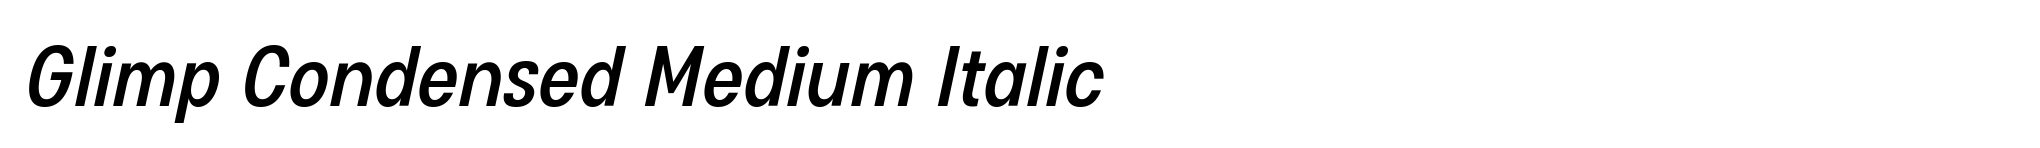 Glimp Condensed Medium Italic image